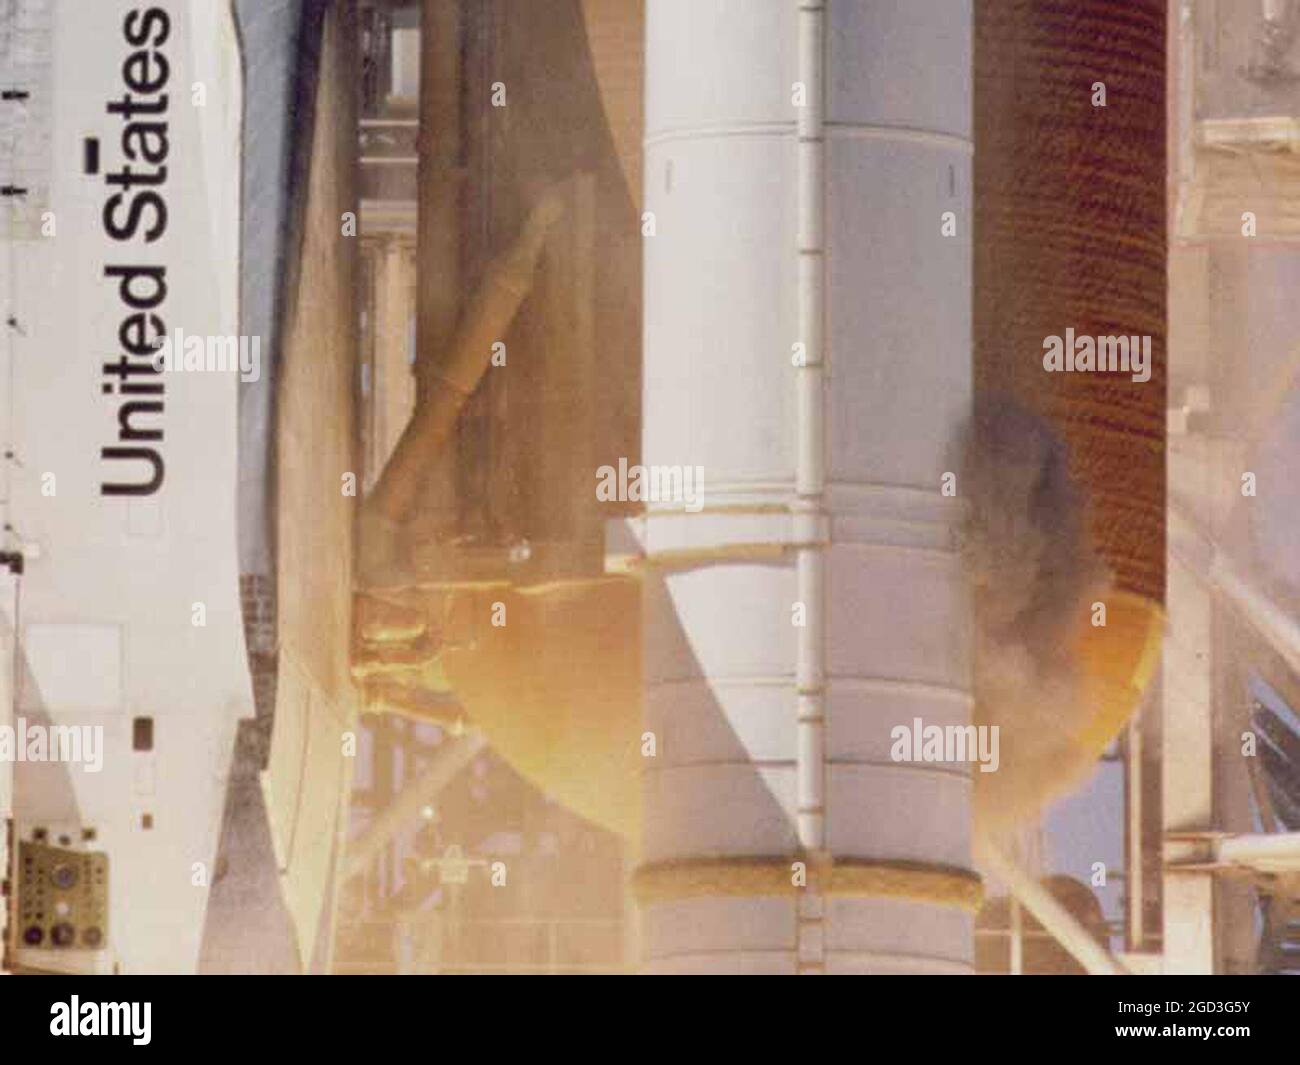 Il famoso Puff of Smoke da Shuttle Challenger sul volo STS-51L. Il fumo segnala il guasto dell'o-ring, che causa la rottura dell'inversore 73 secondi dopo. Foto Stock